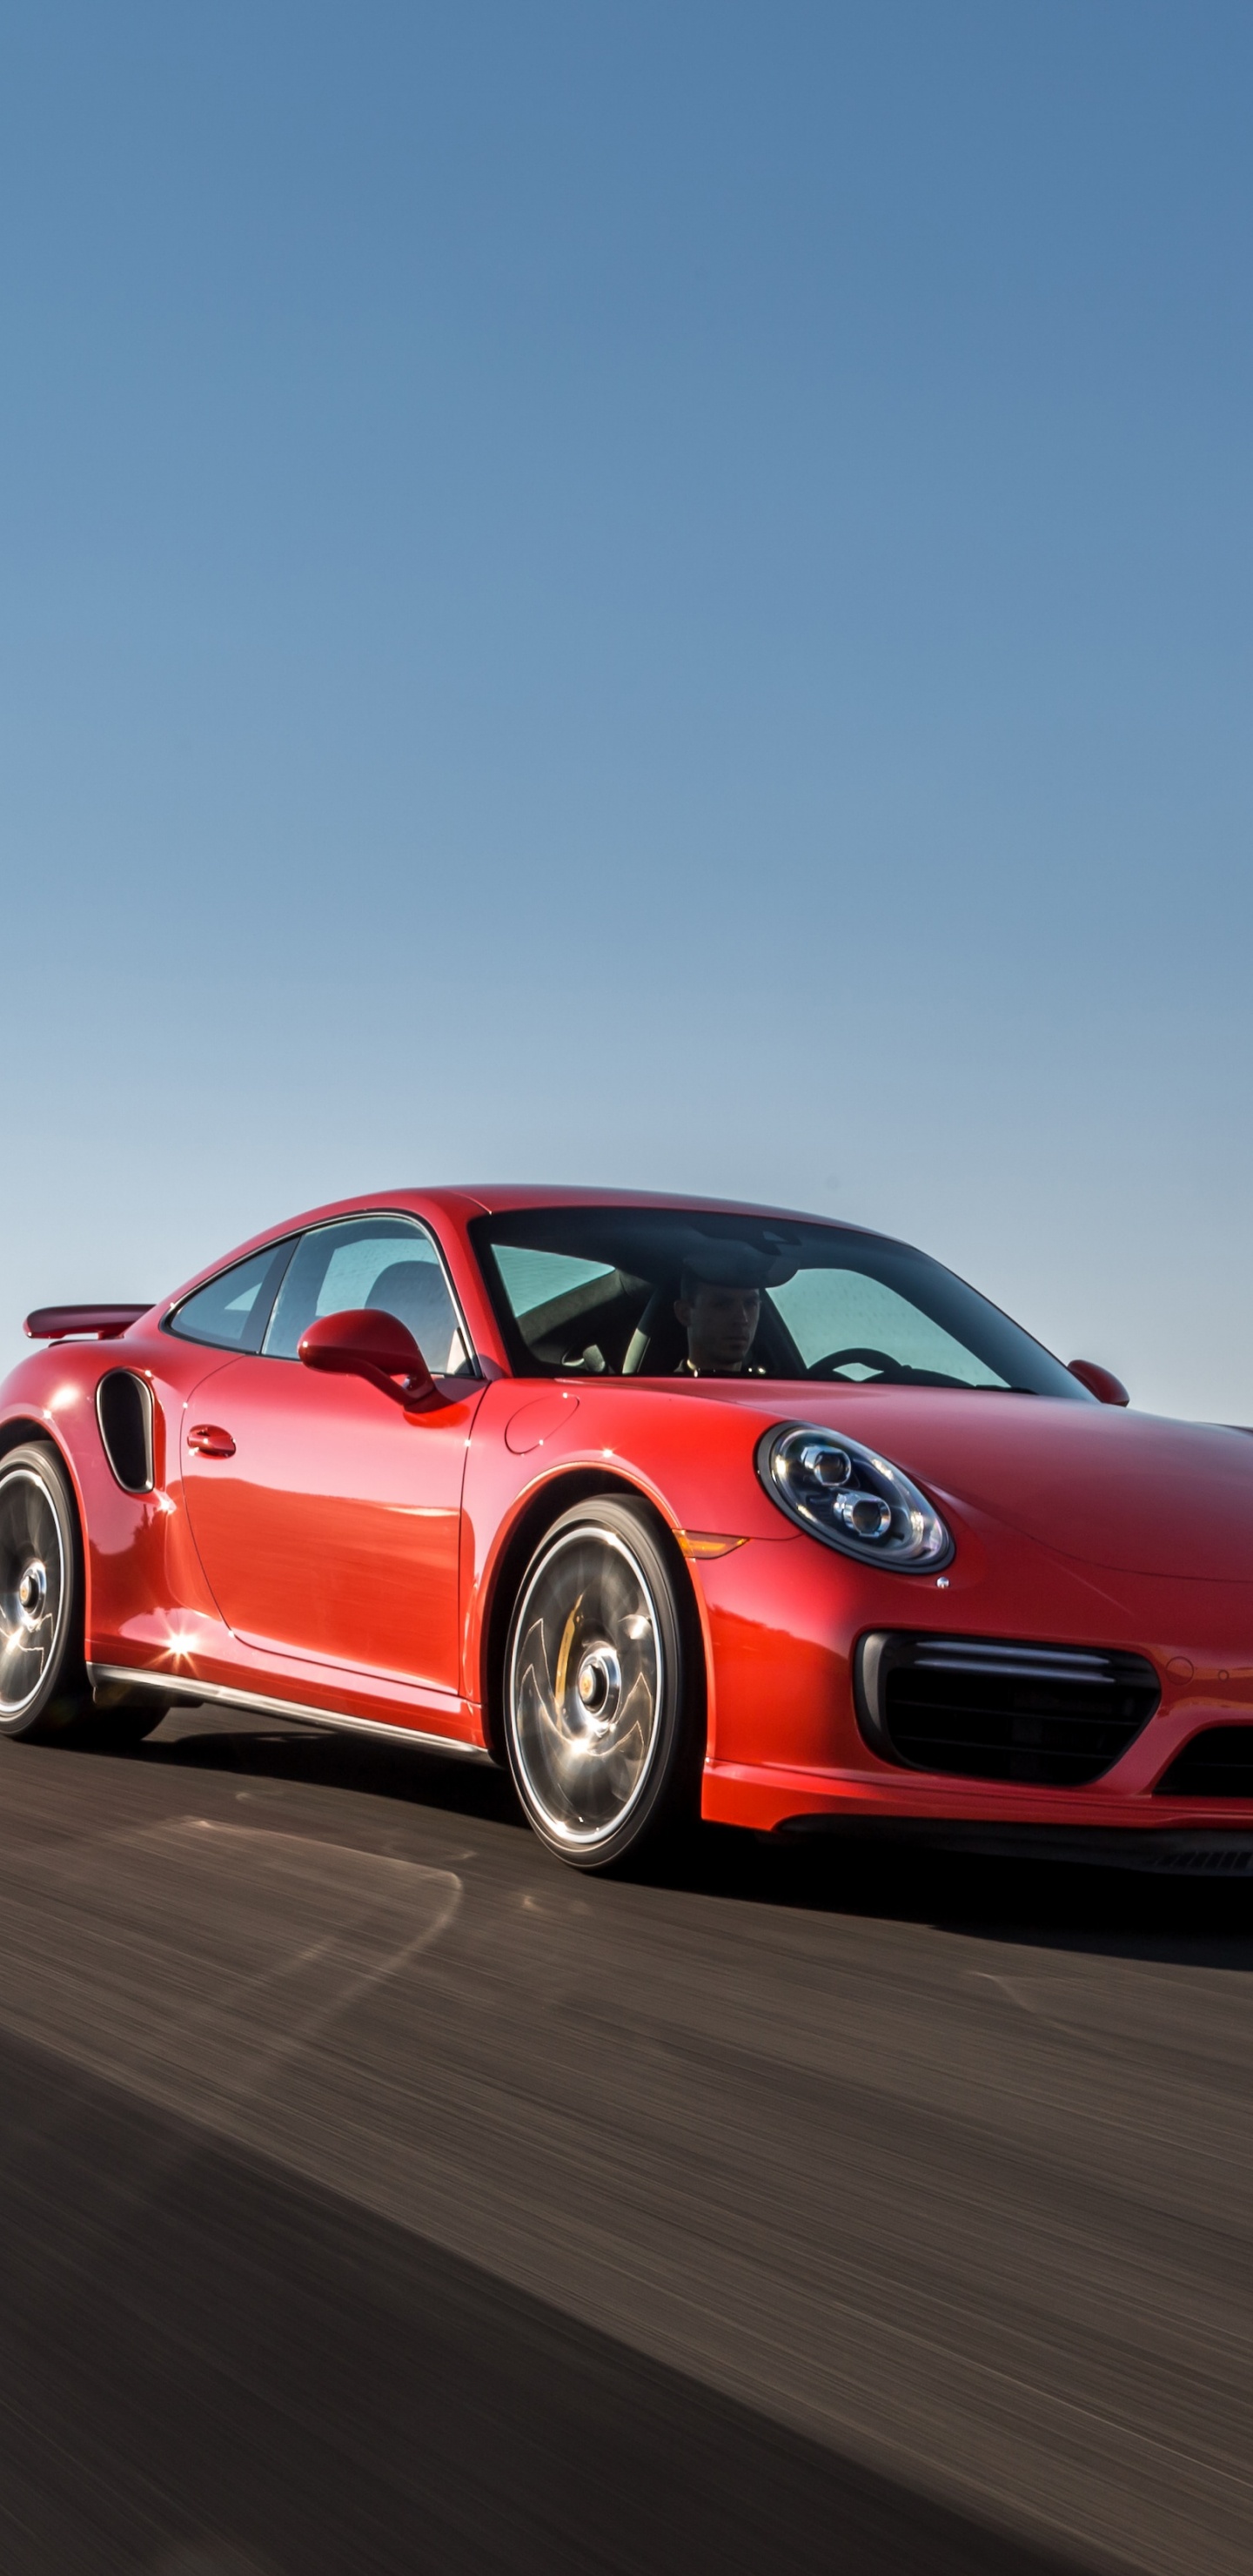 Roter Porsche 911 Tagsüber Unterwegs. Wallpaper in 1440x2960 Resolution